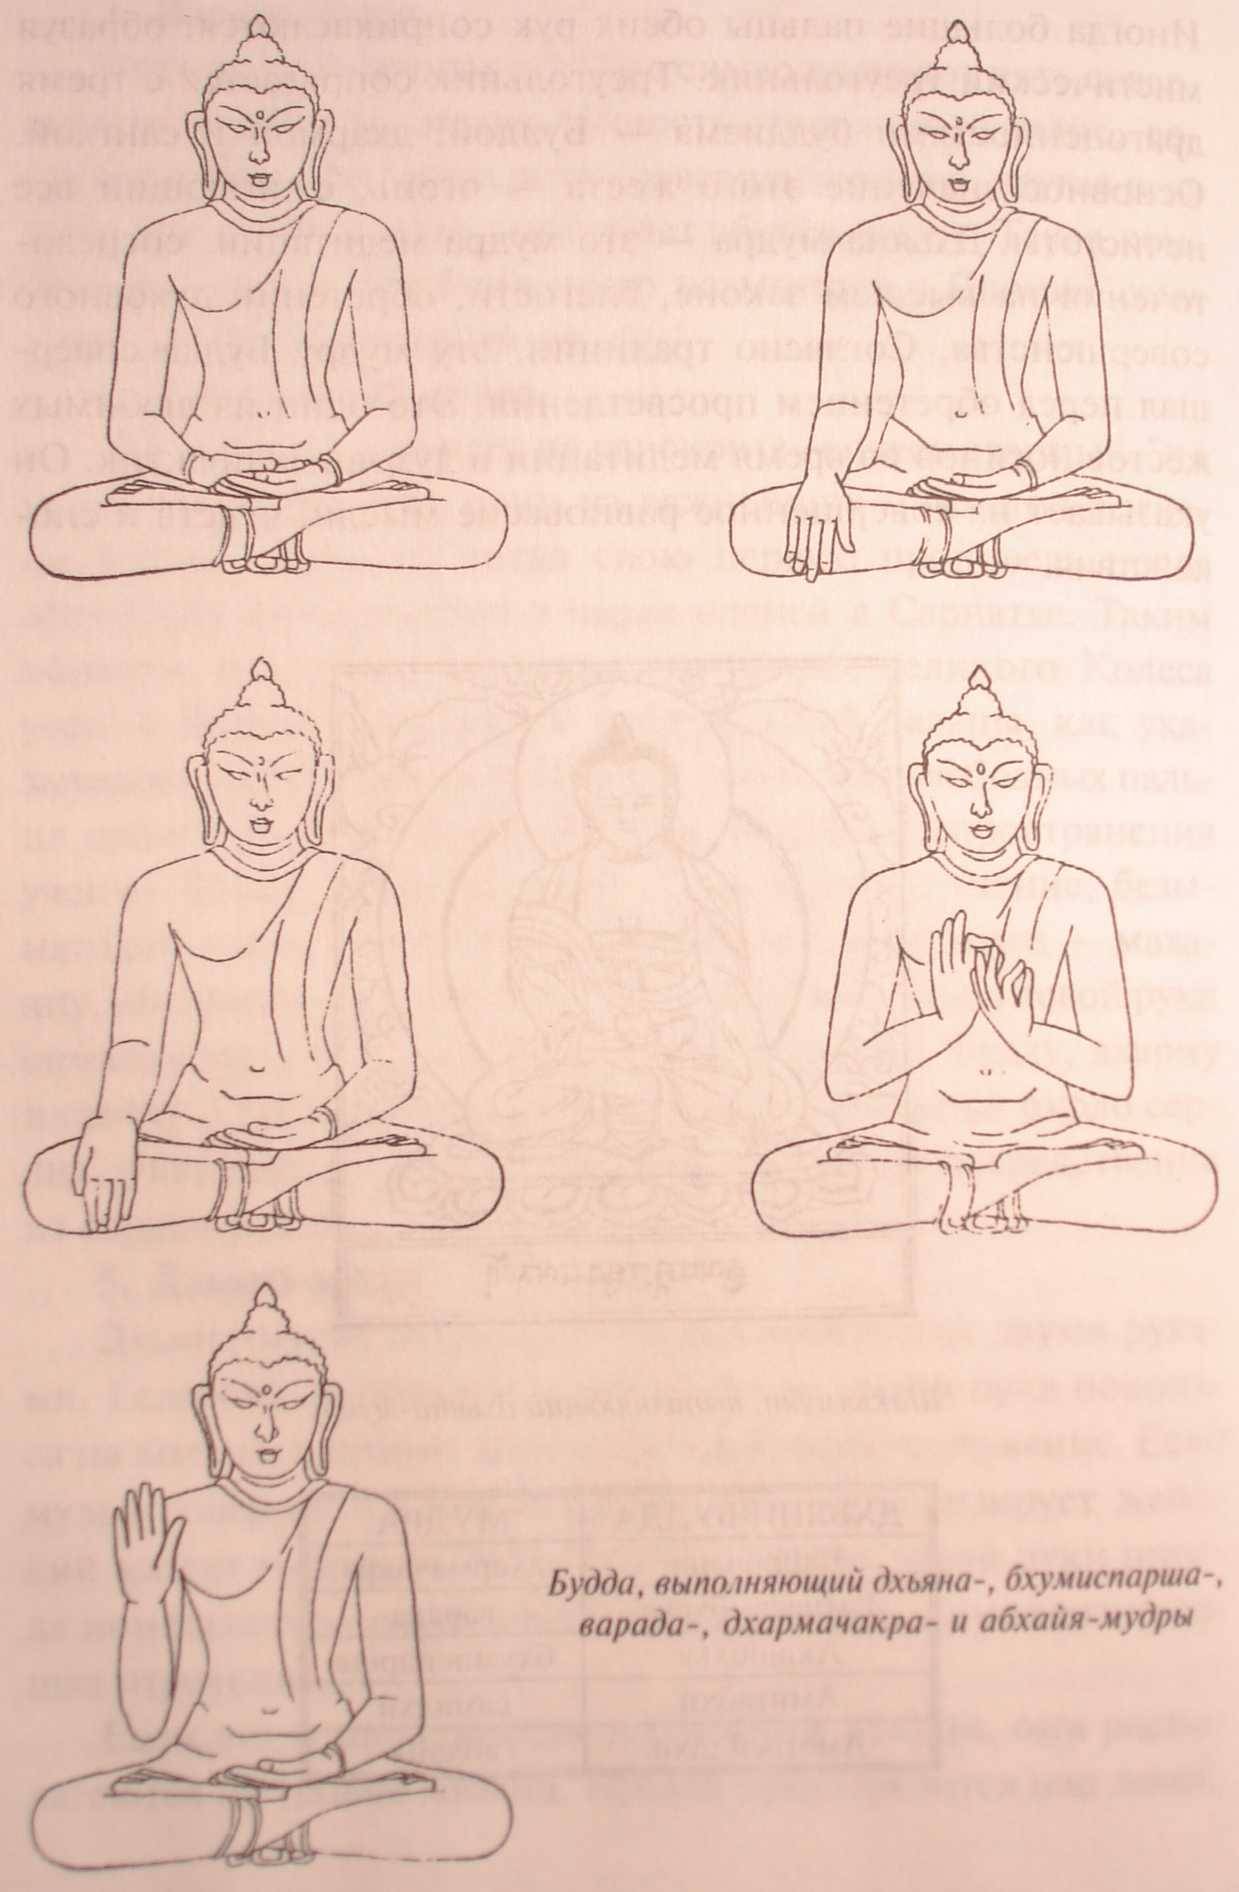 Мудра знания и другие 7 положений рук при медитации